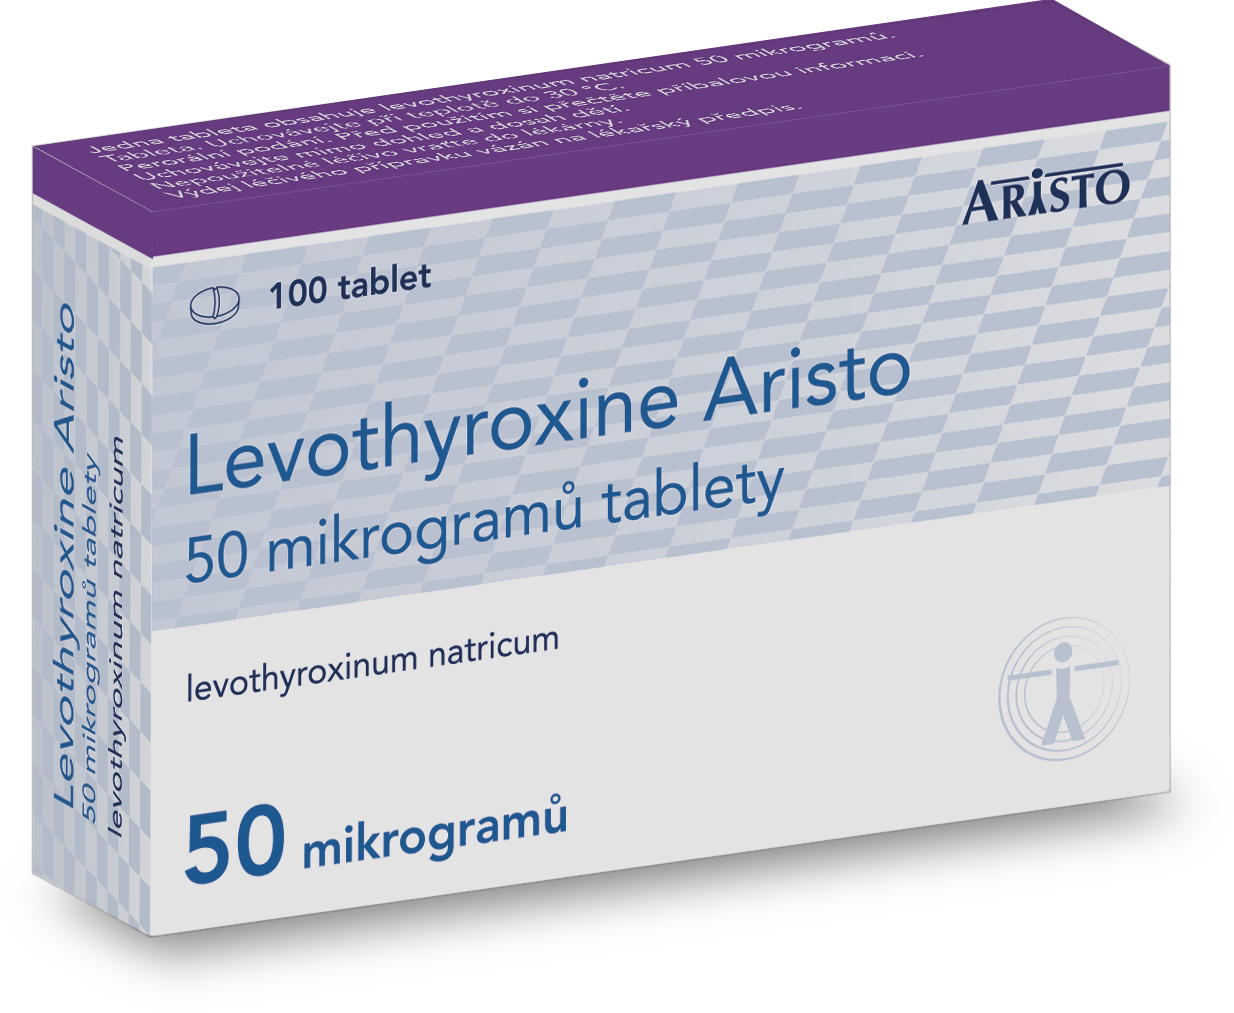 Levothyroxine Aristo 50 mikrogramů